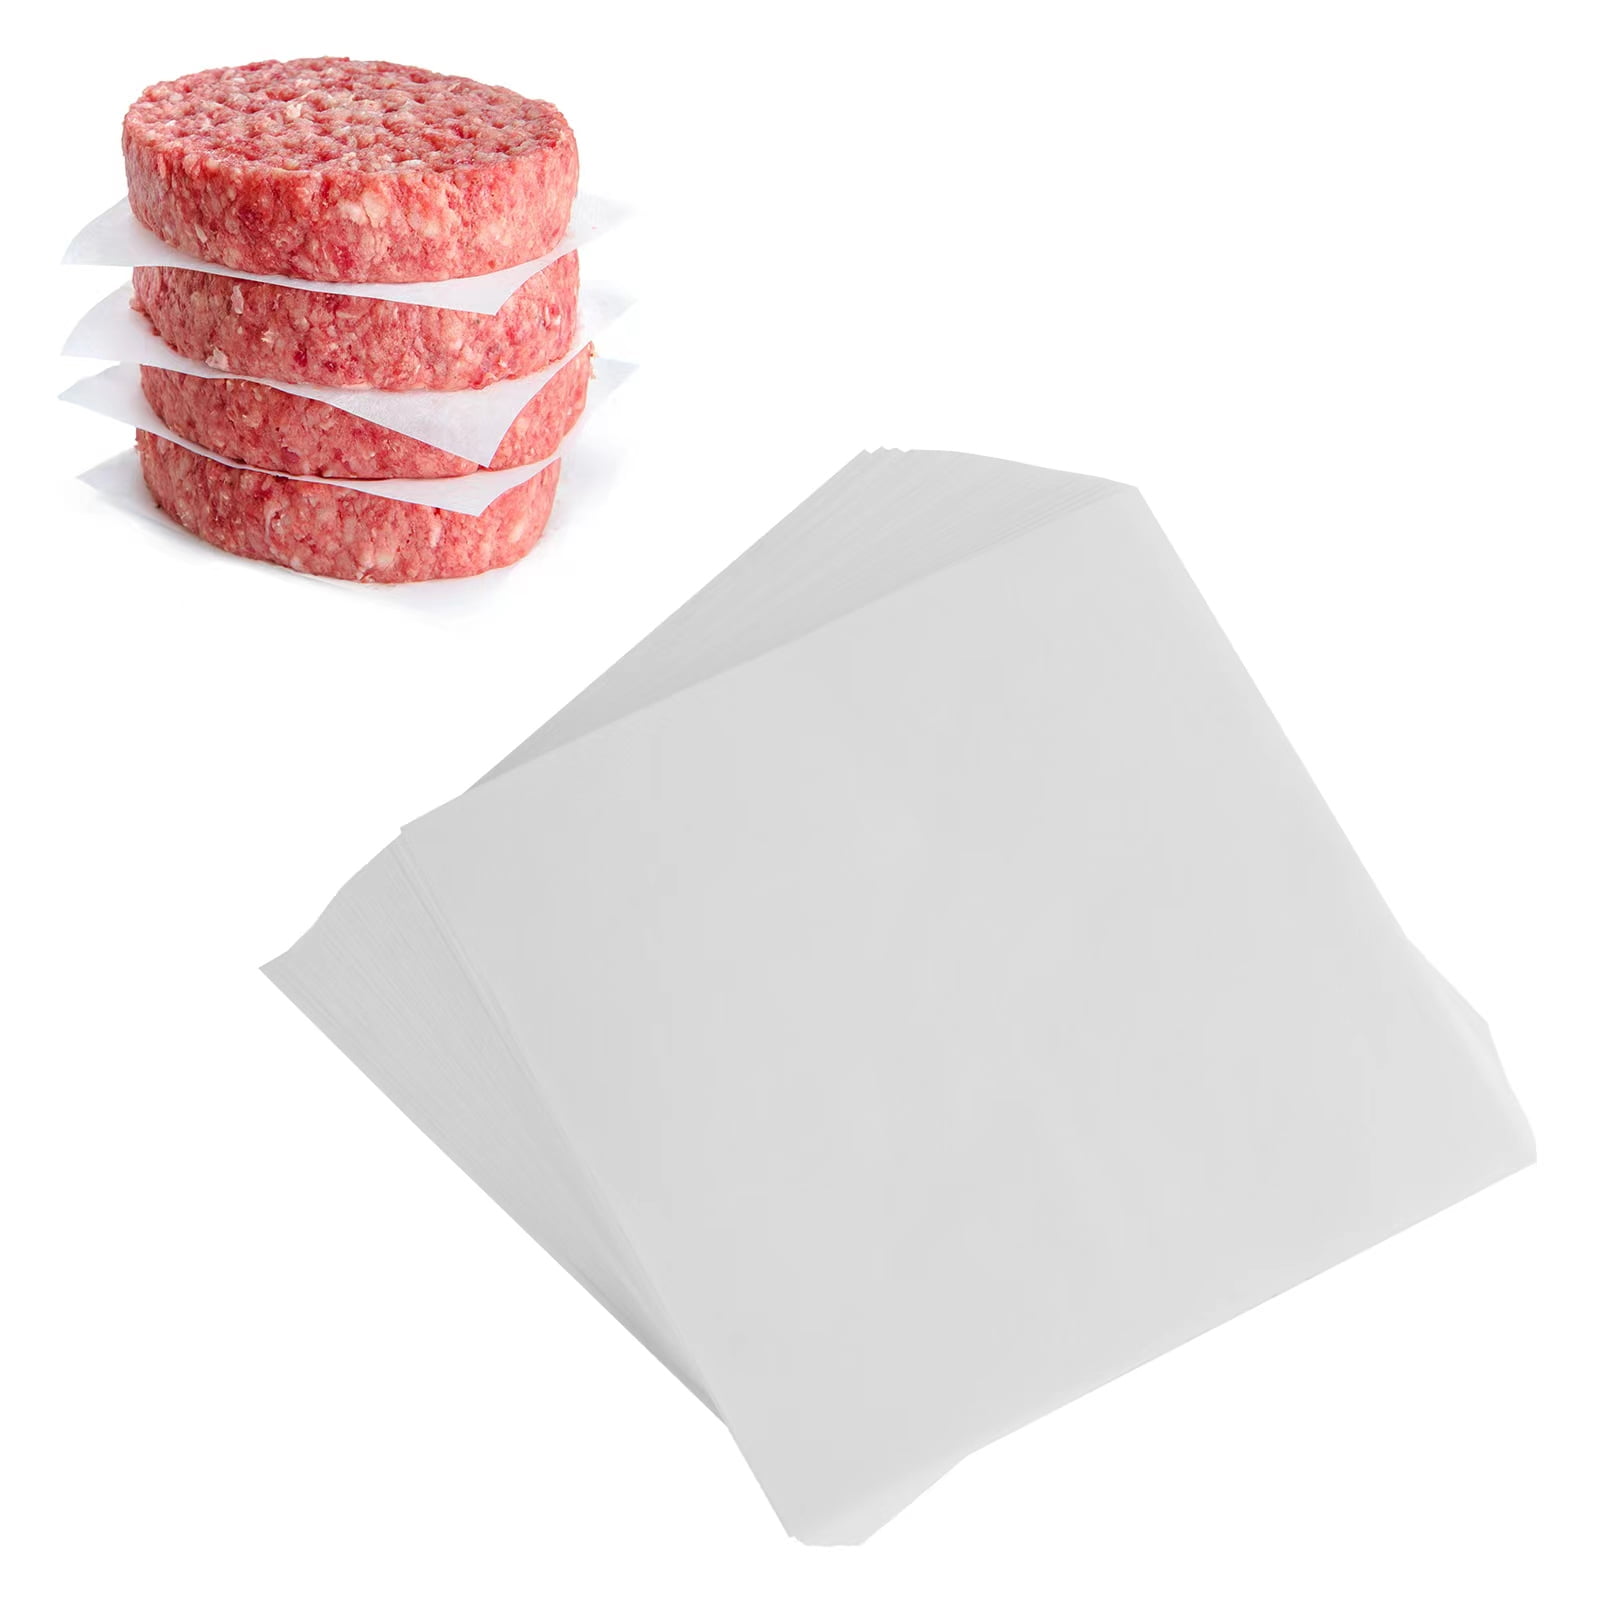 Square Wax Paper Sheets - Hamburger Patty Paper Squares (1000 Sheets)